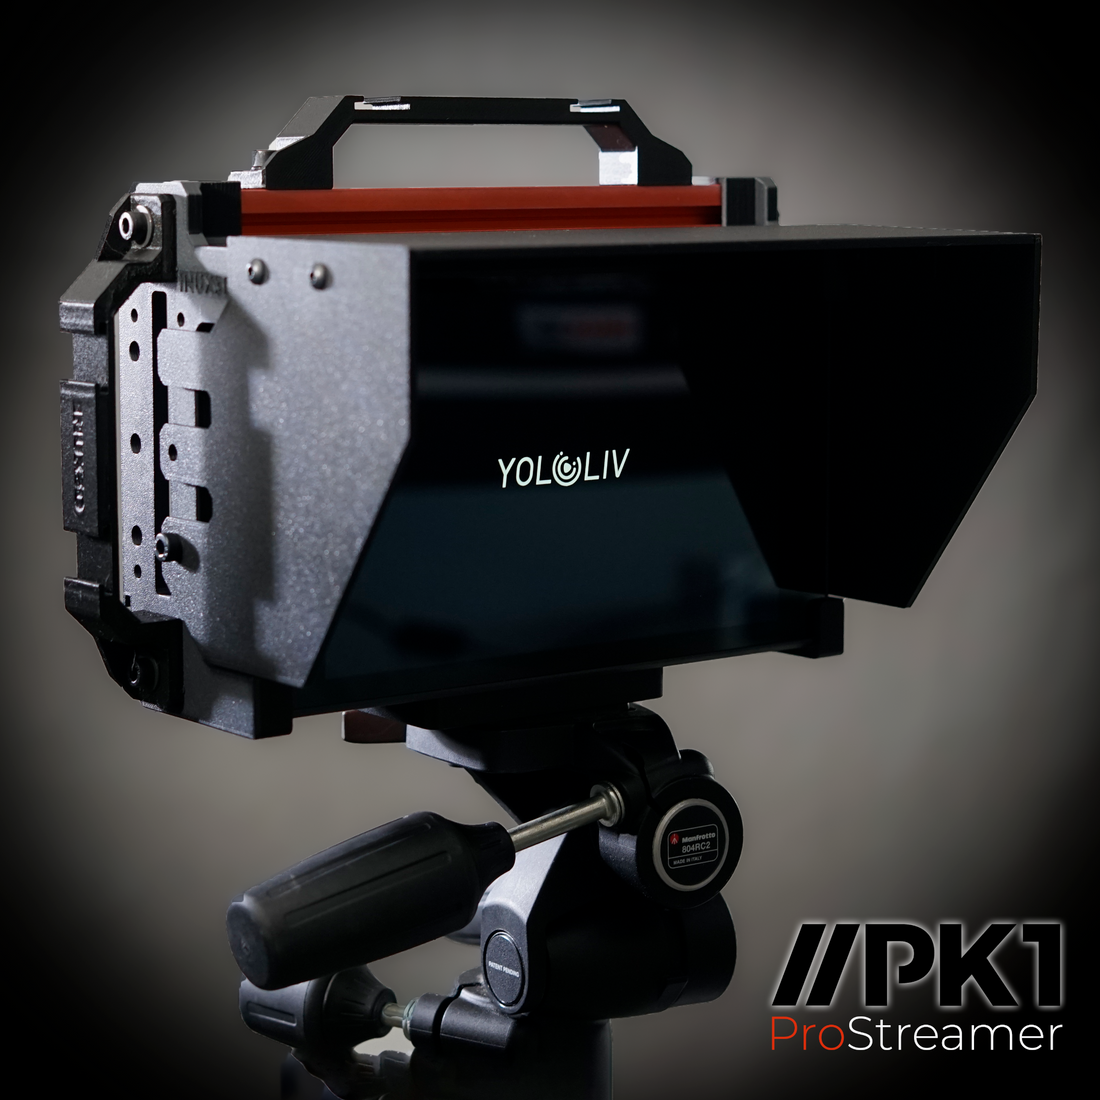 PK1 Pro Streamer Hood for PK1 Pro Streamer Cage for YoloBox Pro